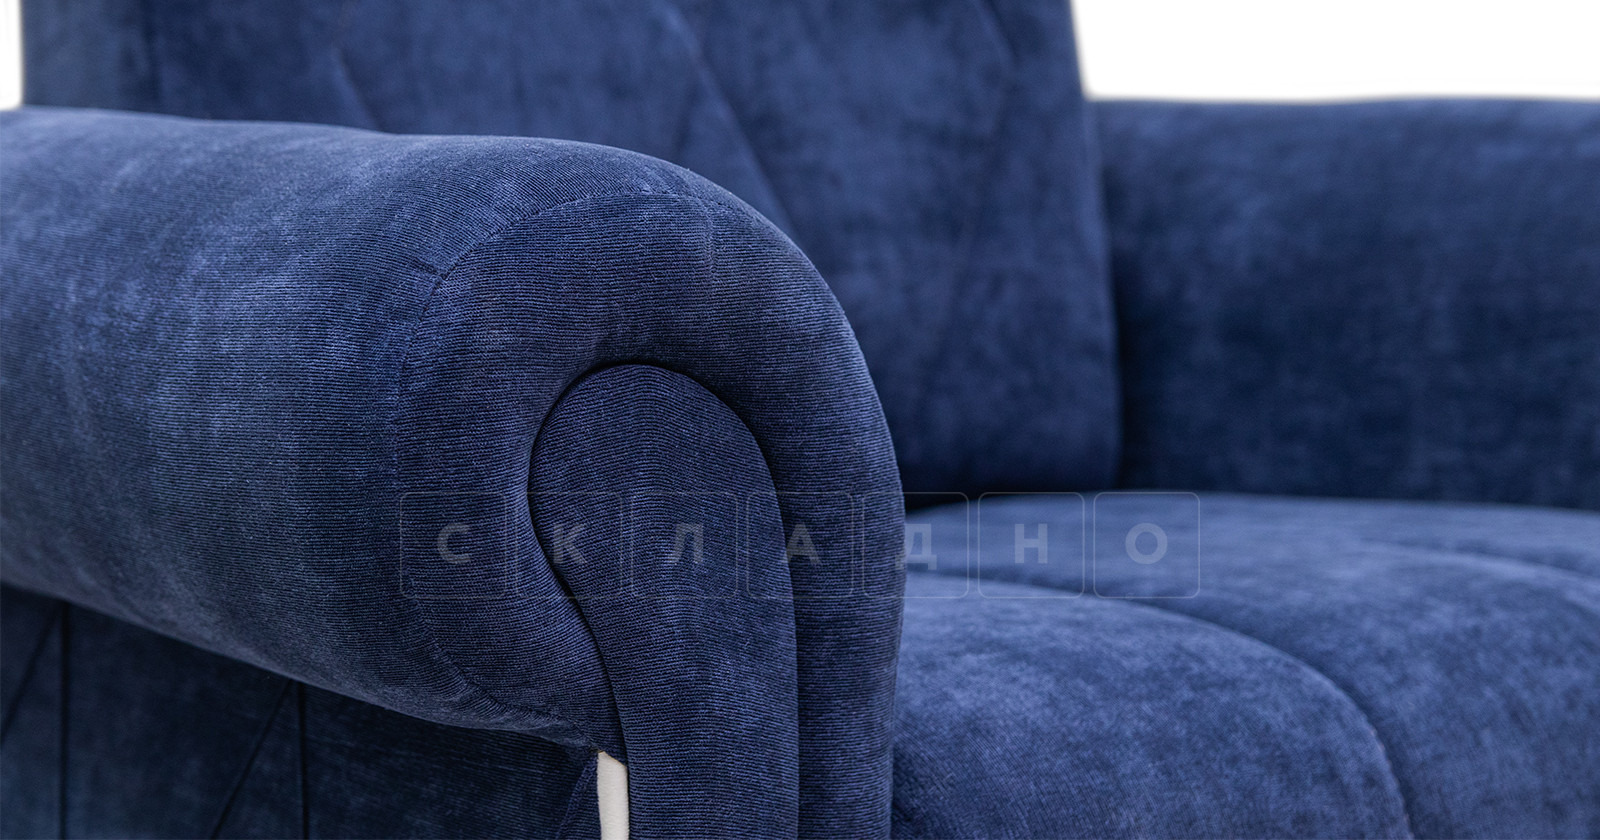 Кресло для отдыха Роза чернильный синий фото 8 | интернет-магазин Складно